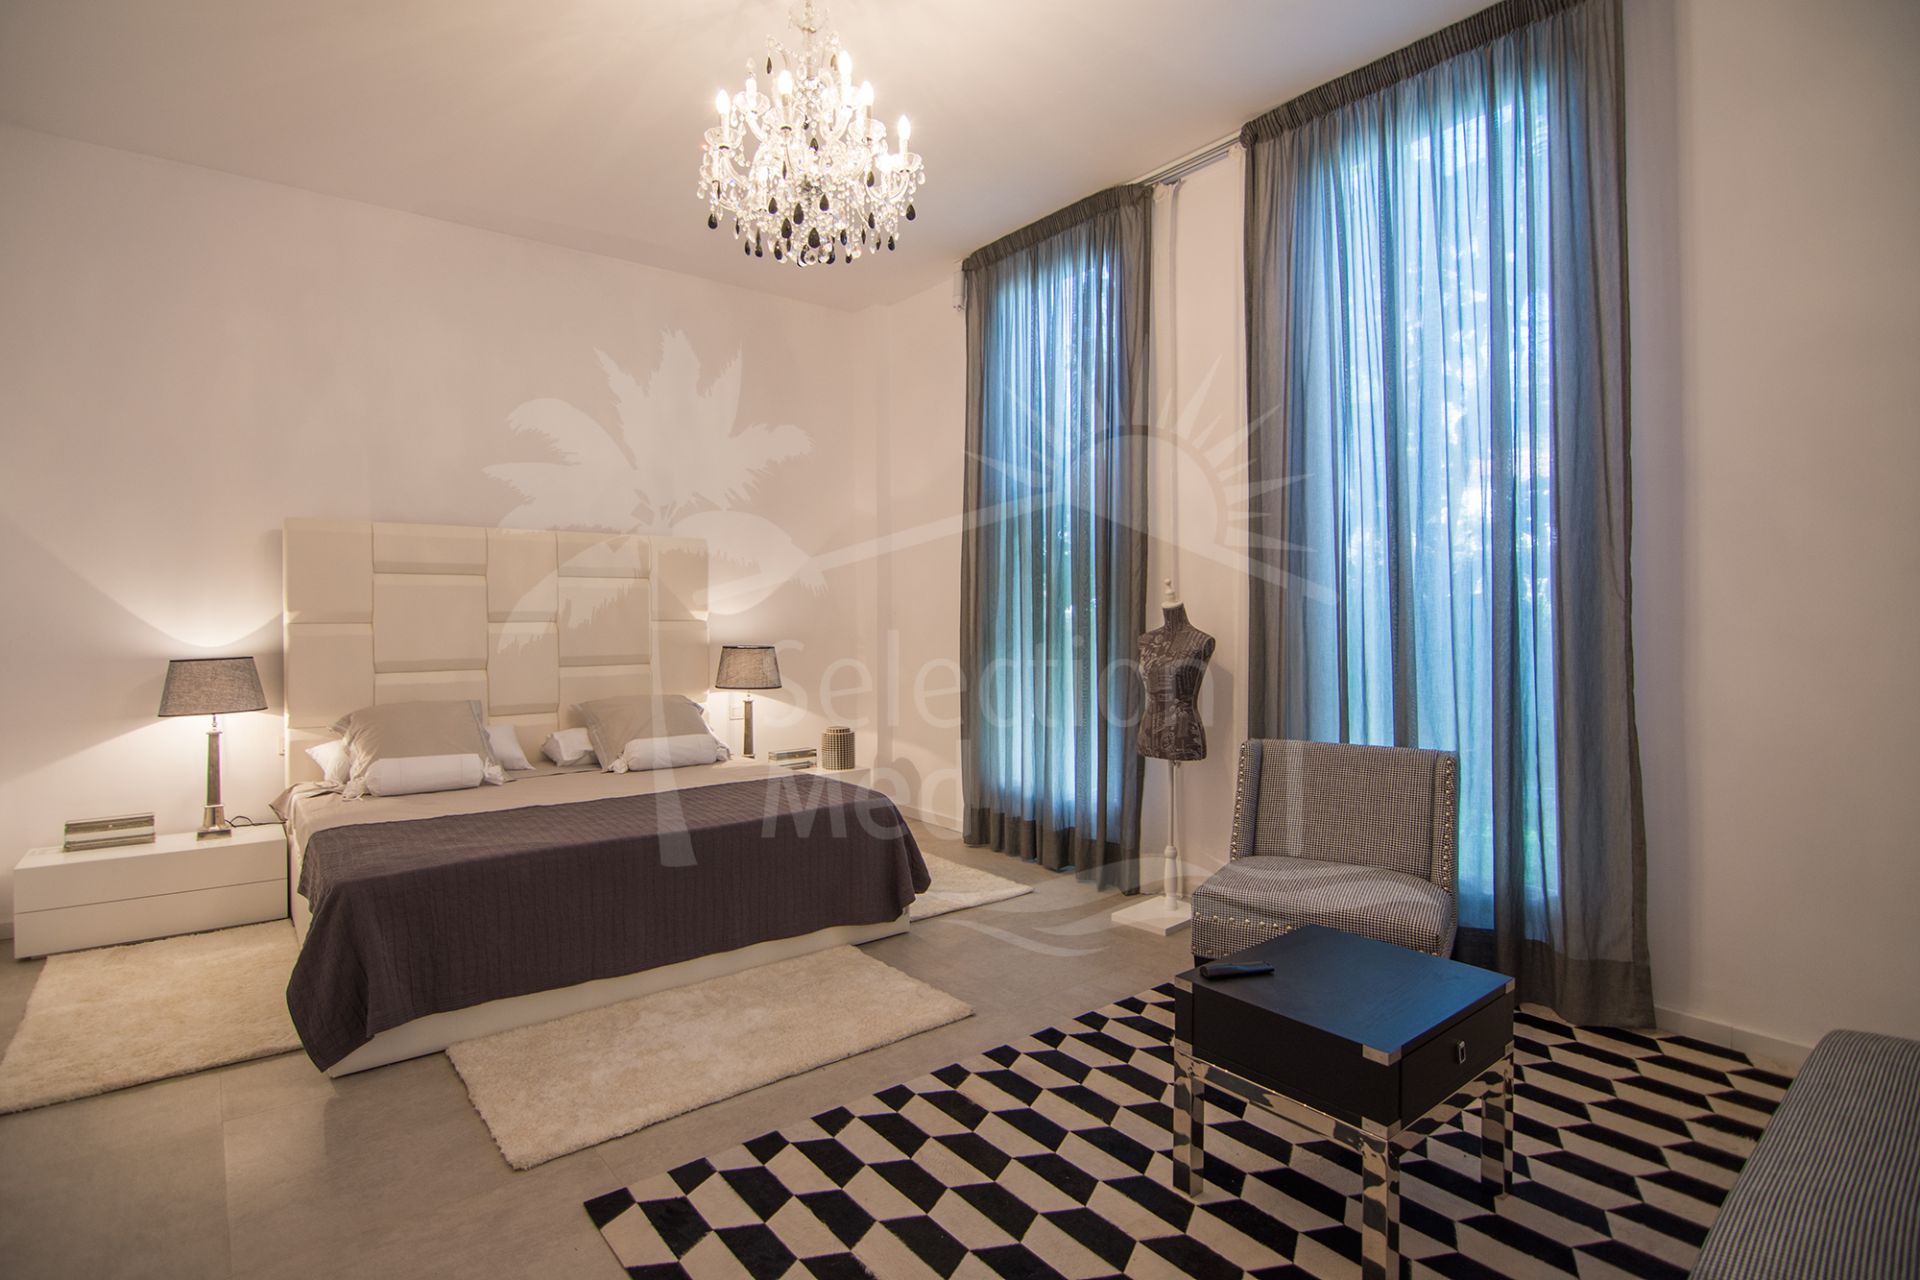 6 Bedrooms Villas with Unique Design, Rio Verde, Marbella